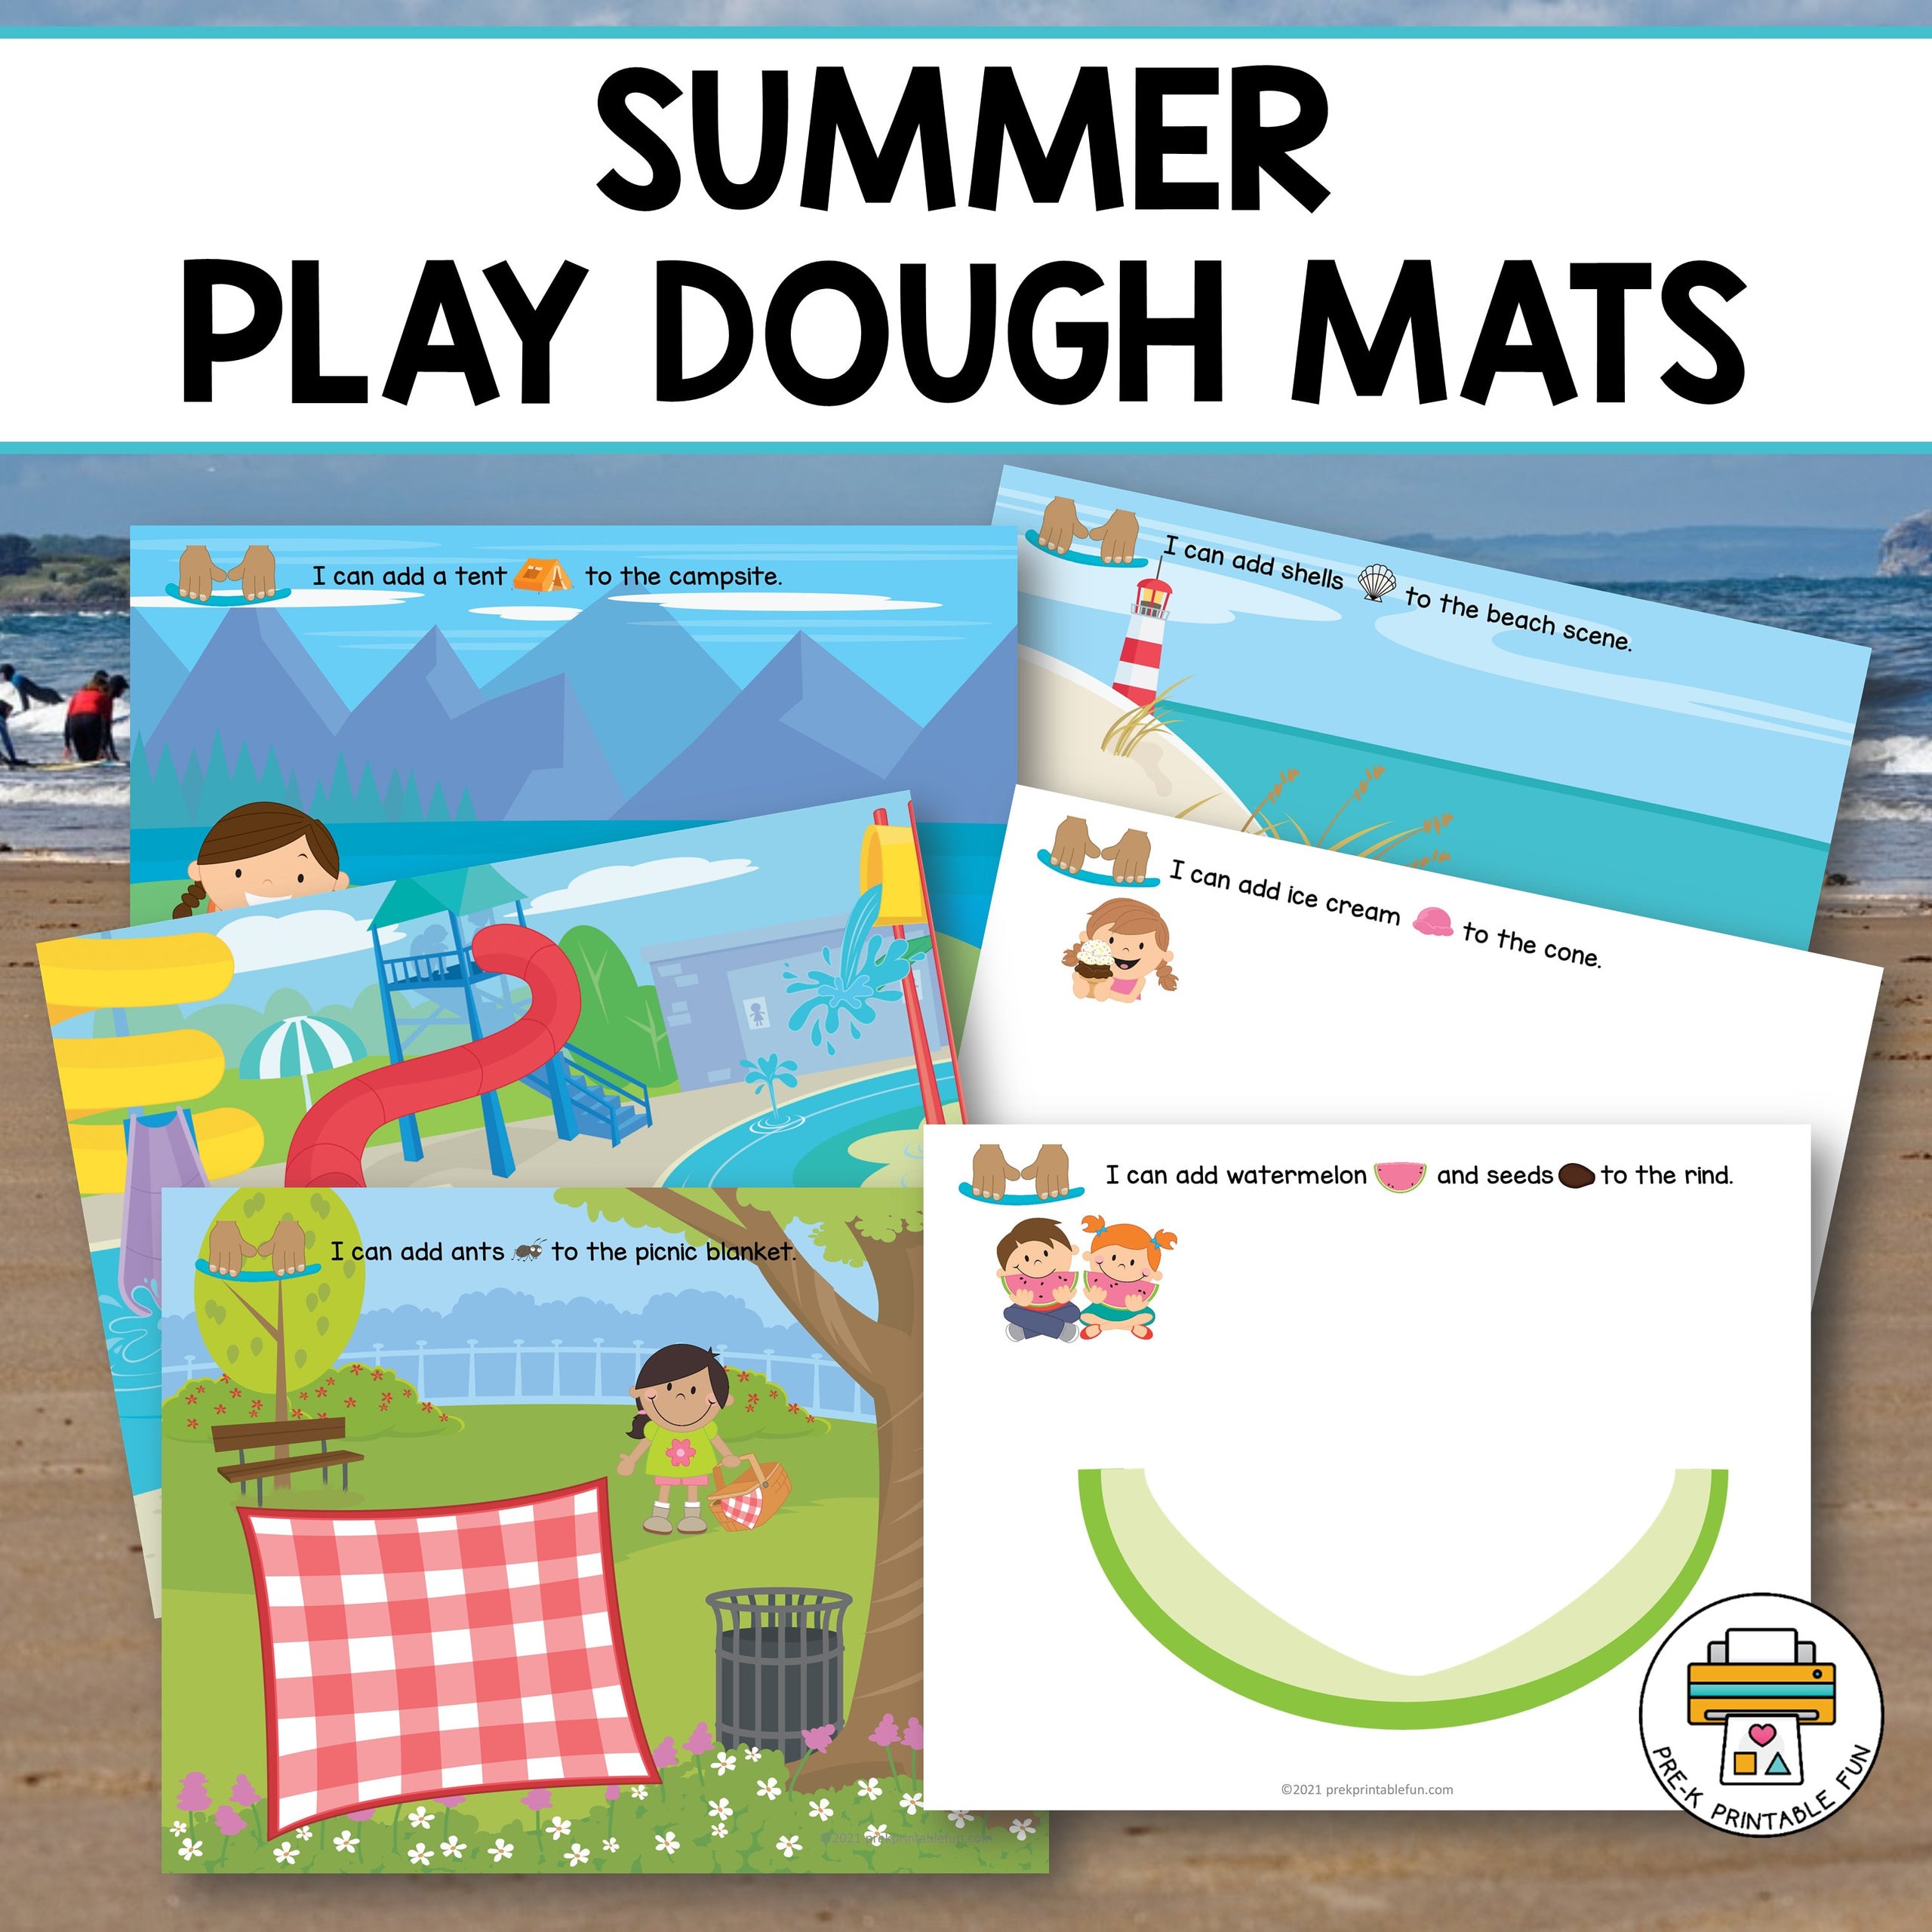 Summer Dough Mats